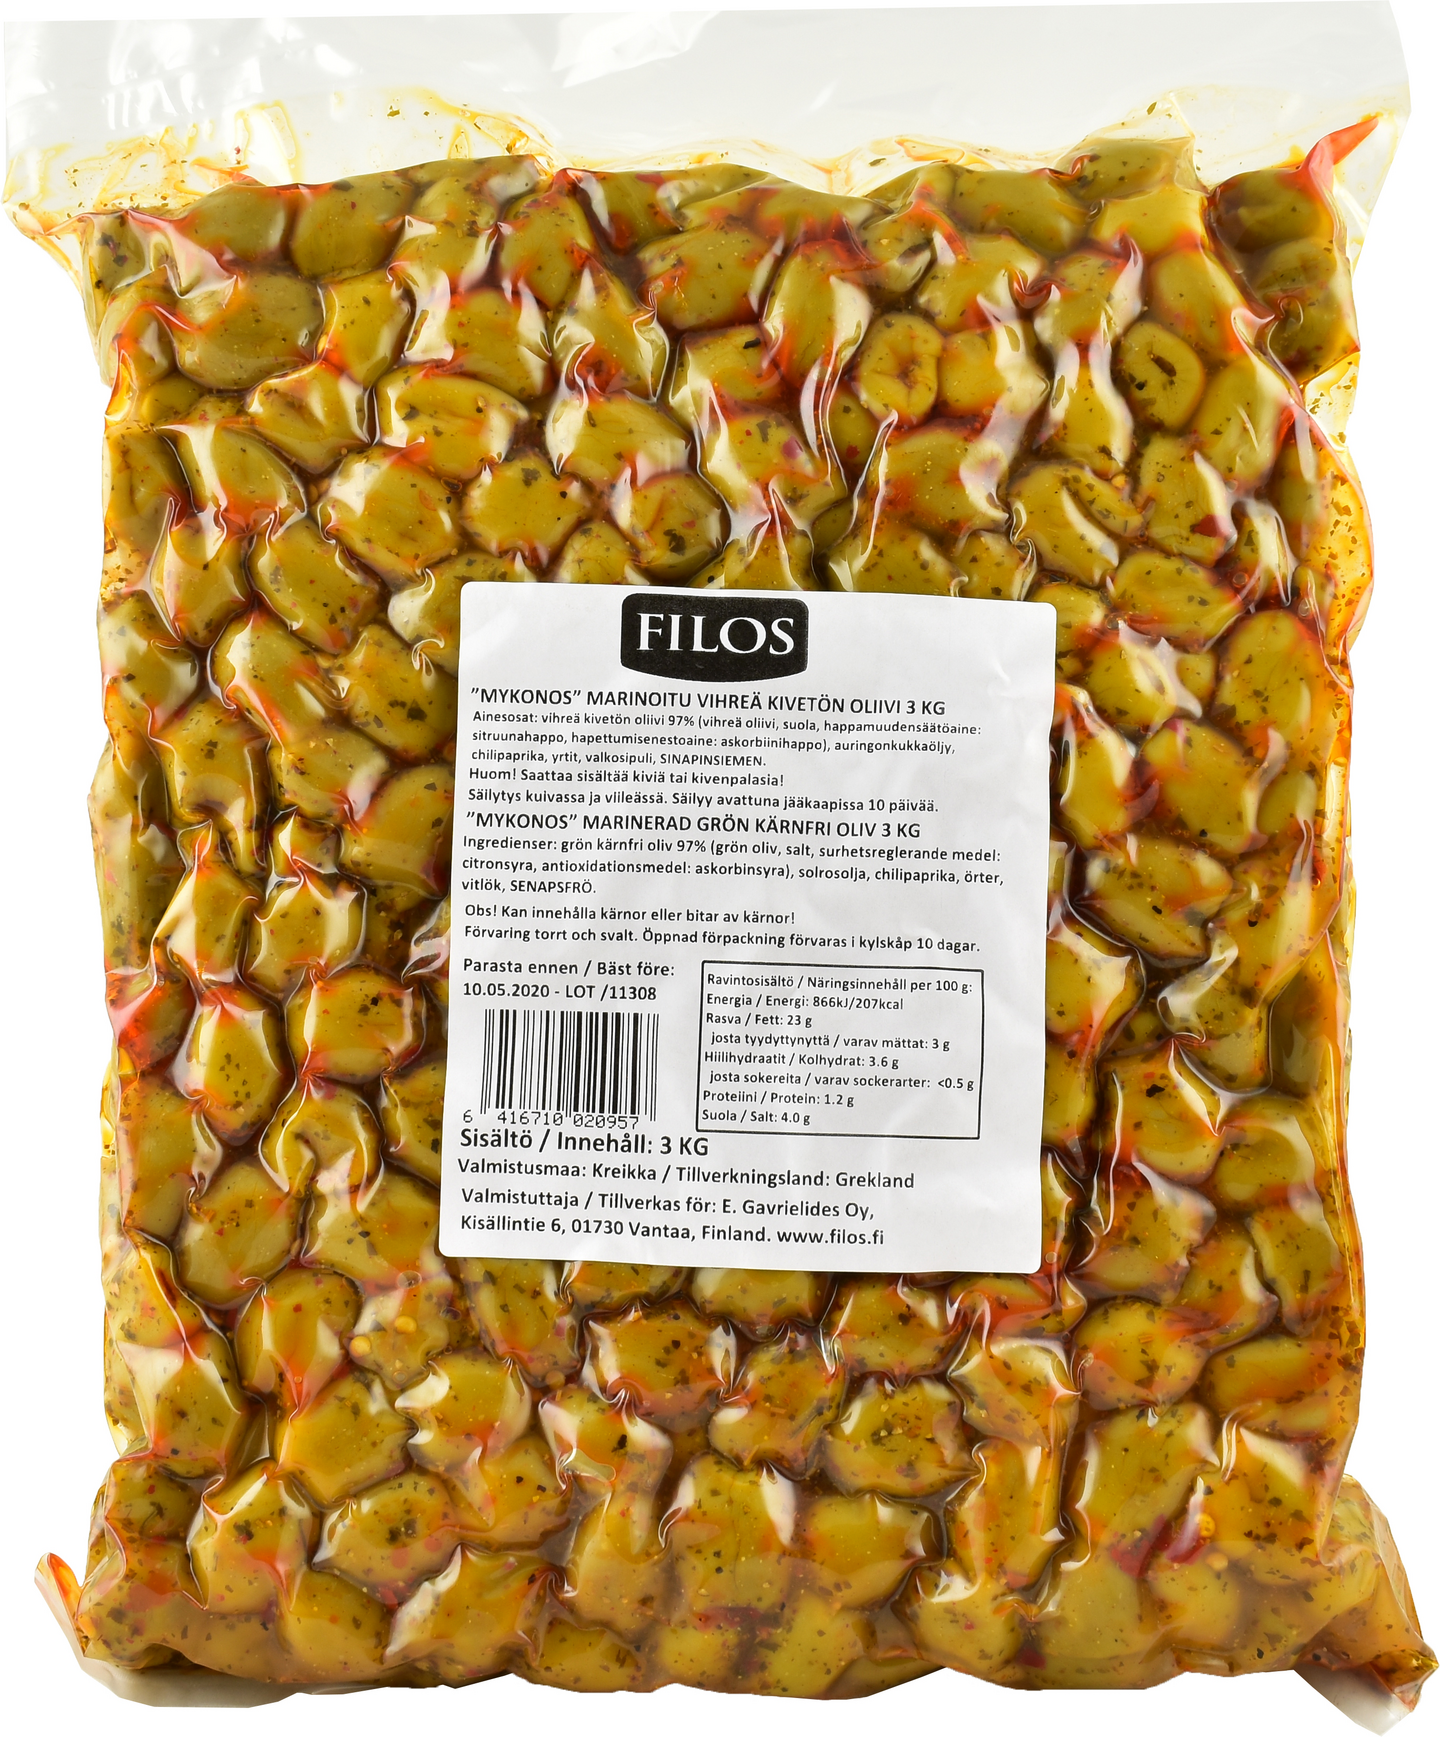 Filos Mykonos marinoitu vihreä kivetön oliivi pussissa 3kg